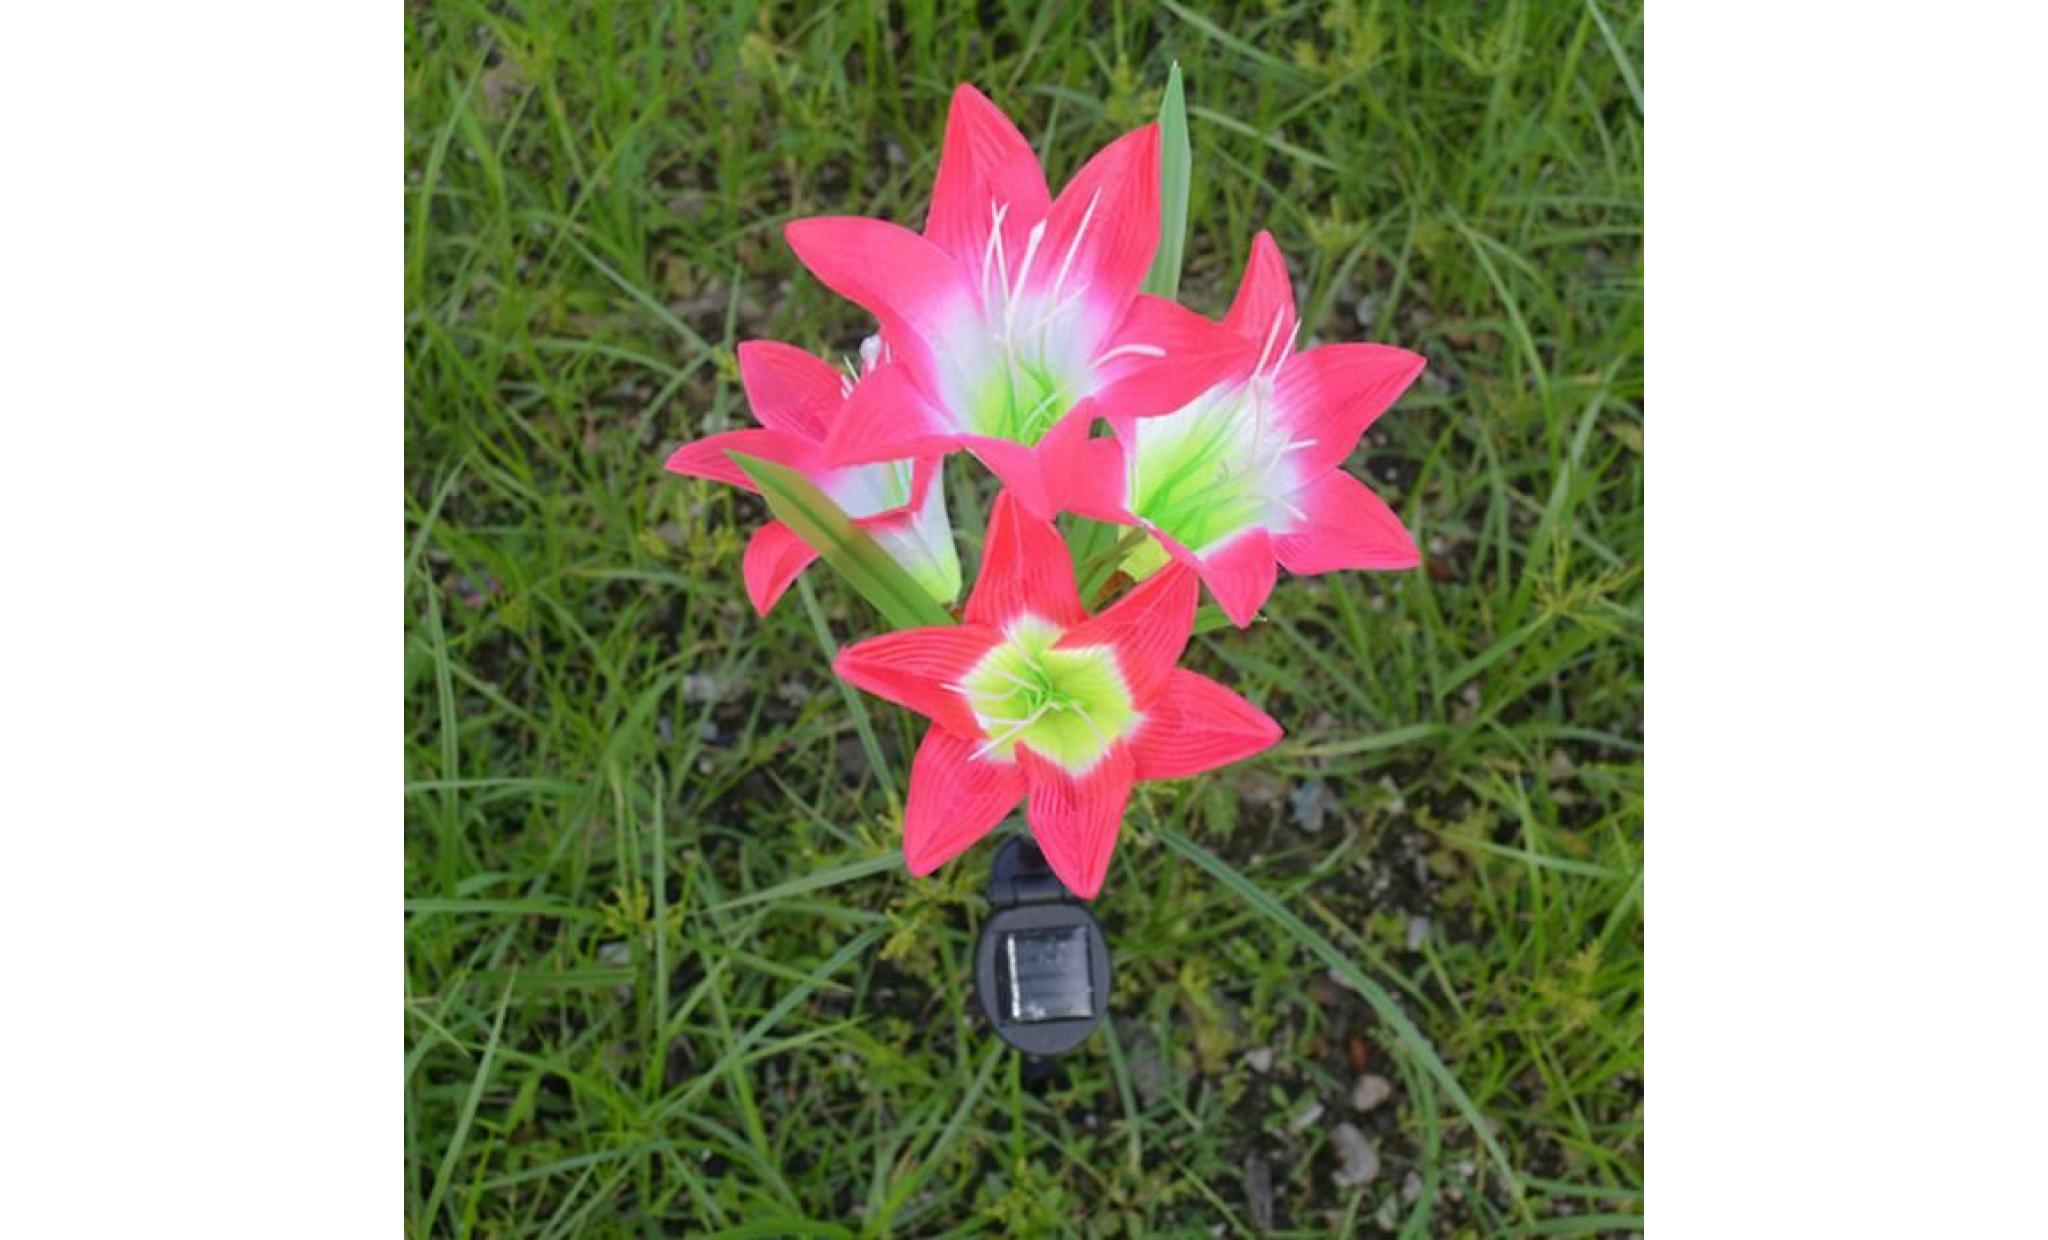 borne solaire 2 pcs fleur de lys jardin solaire actionné pieu lumières lumières fleurs artificielles led lumière 041 pas cher